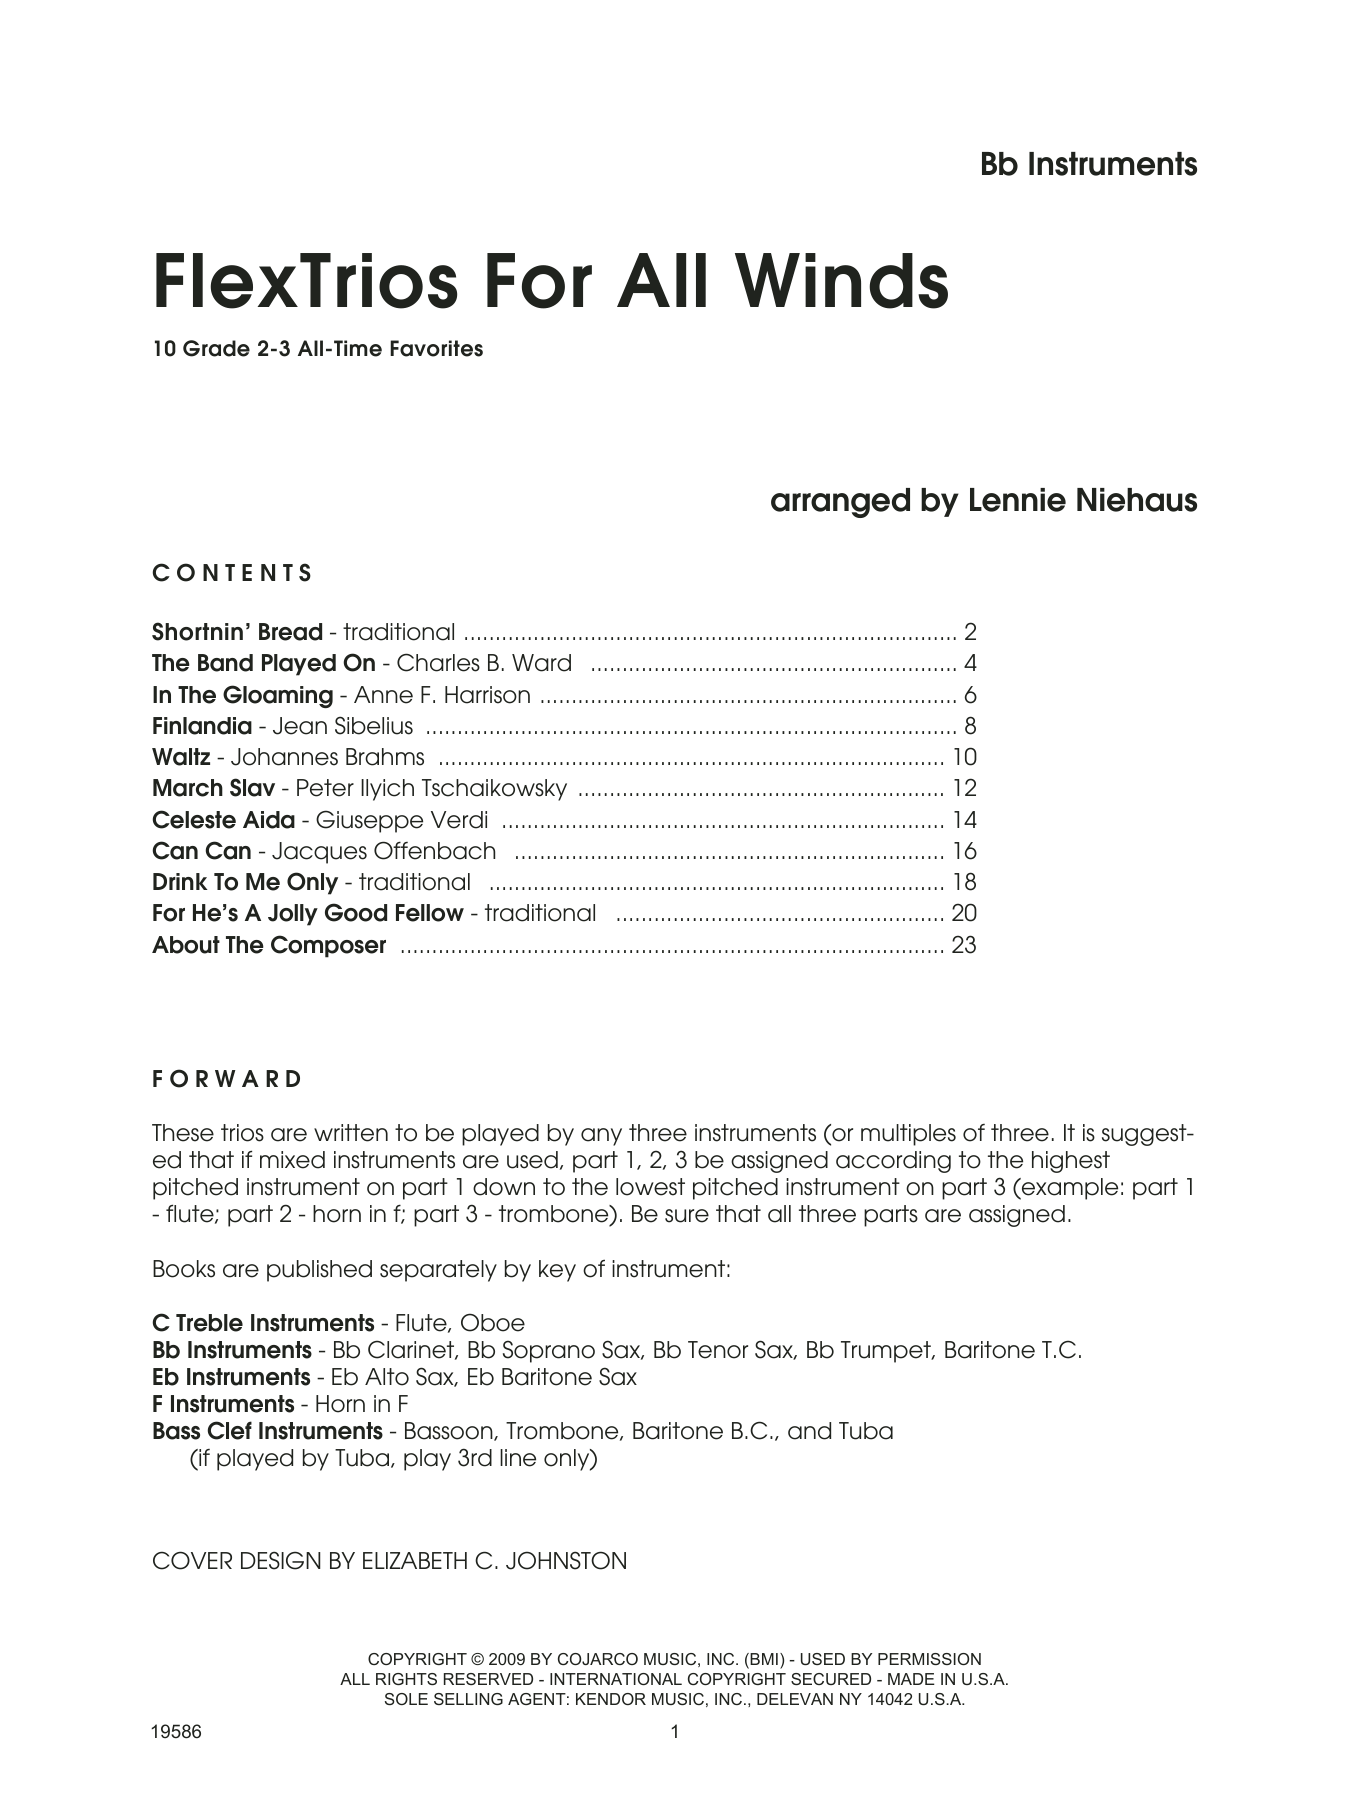 FlexTrios For All Winds (Bb Instruments) - Bb Instruments (Performance Ensemble) von Lennie Niehaus